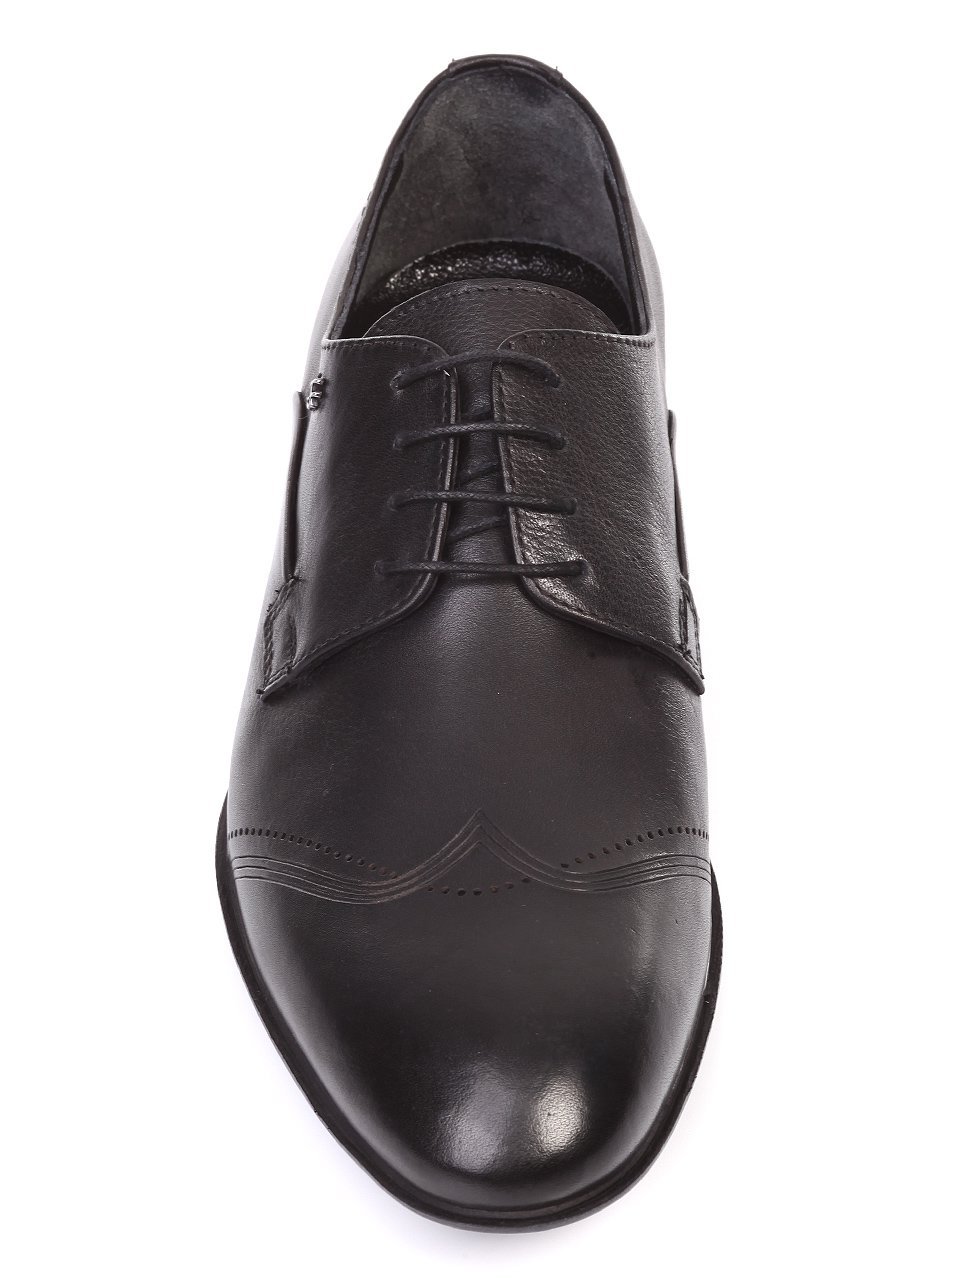 Елегантни мъжки обувки от естествена кожа 7AT-18520 black